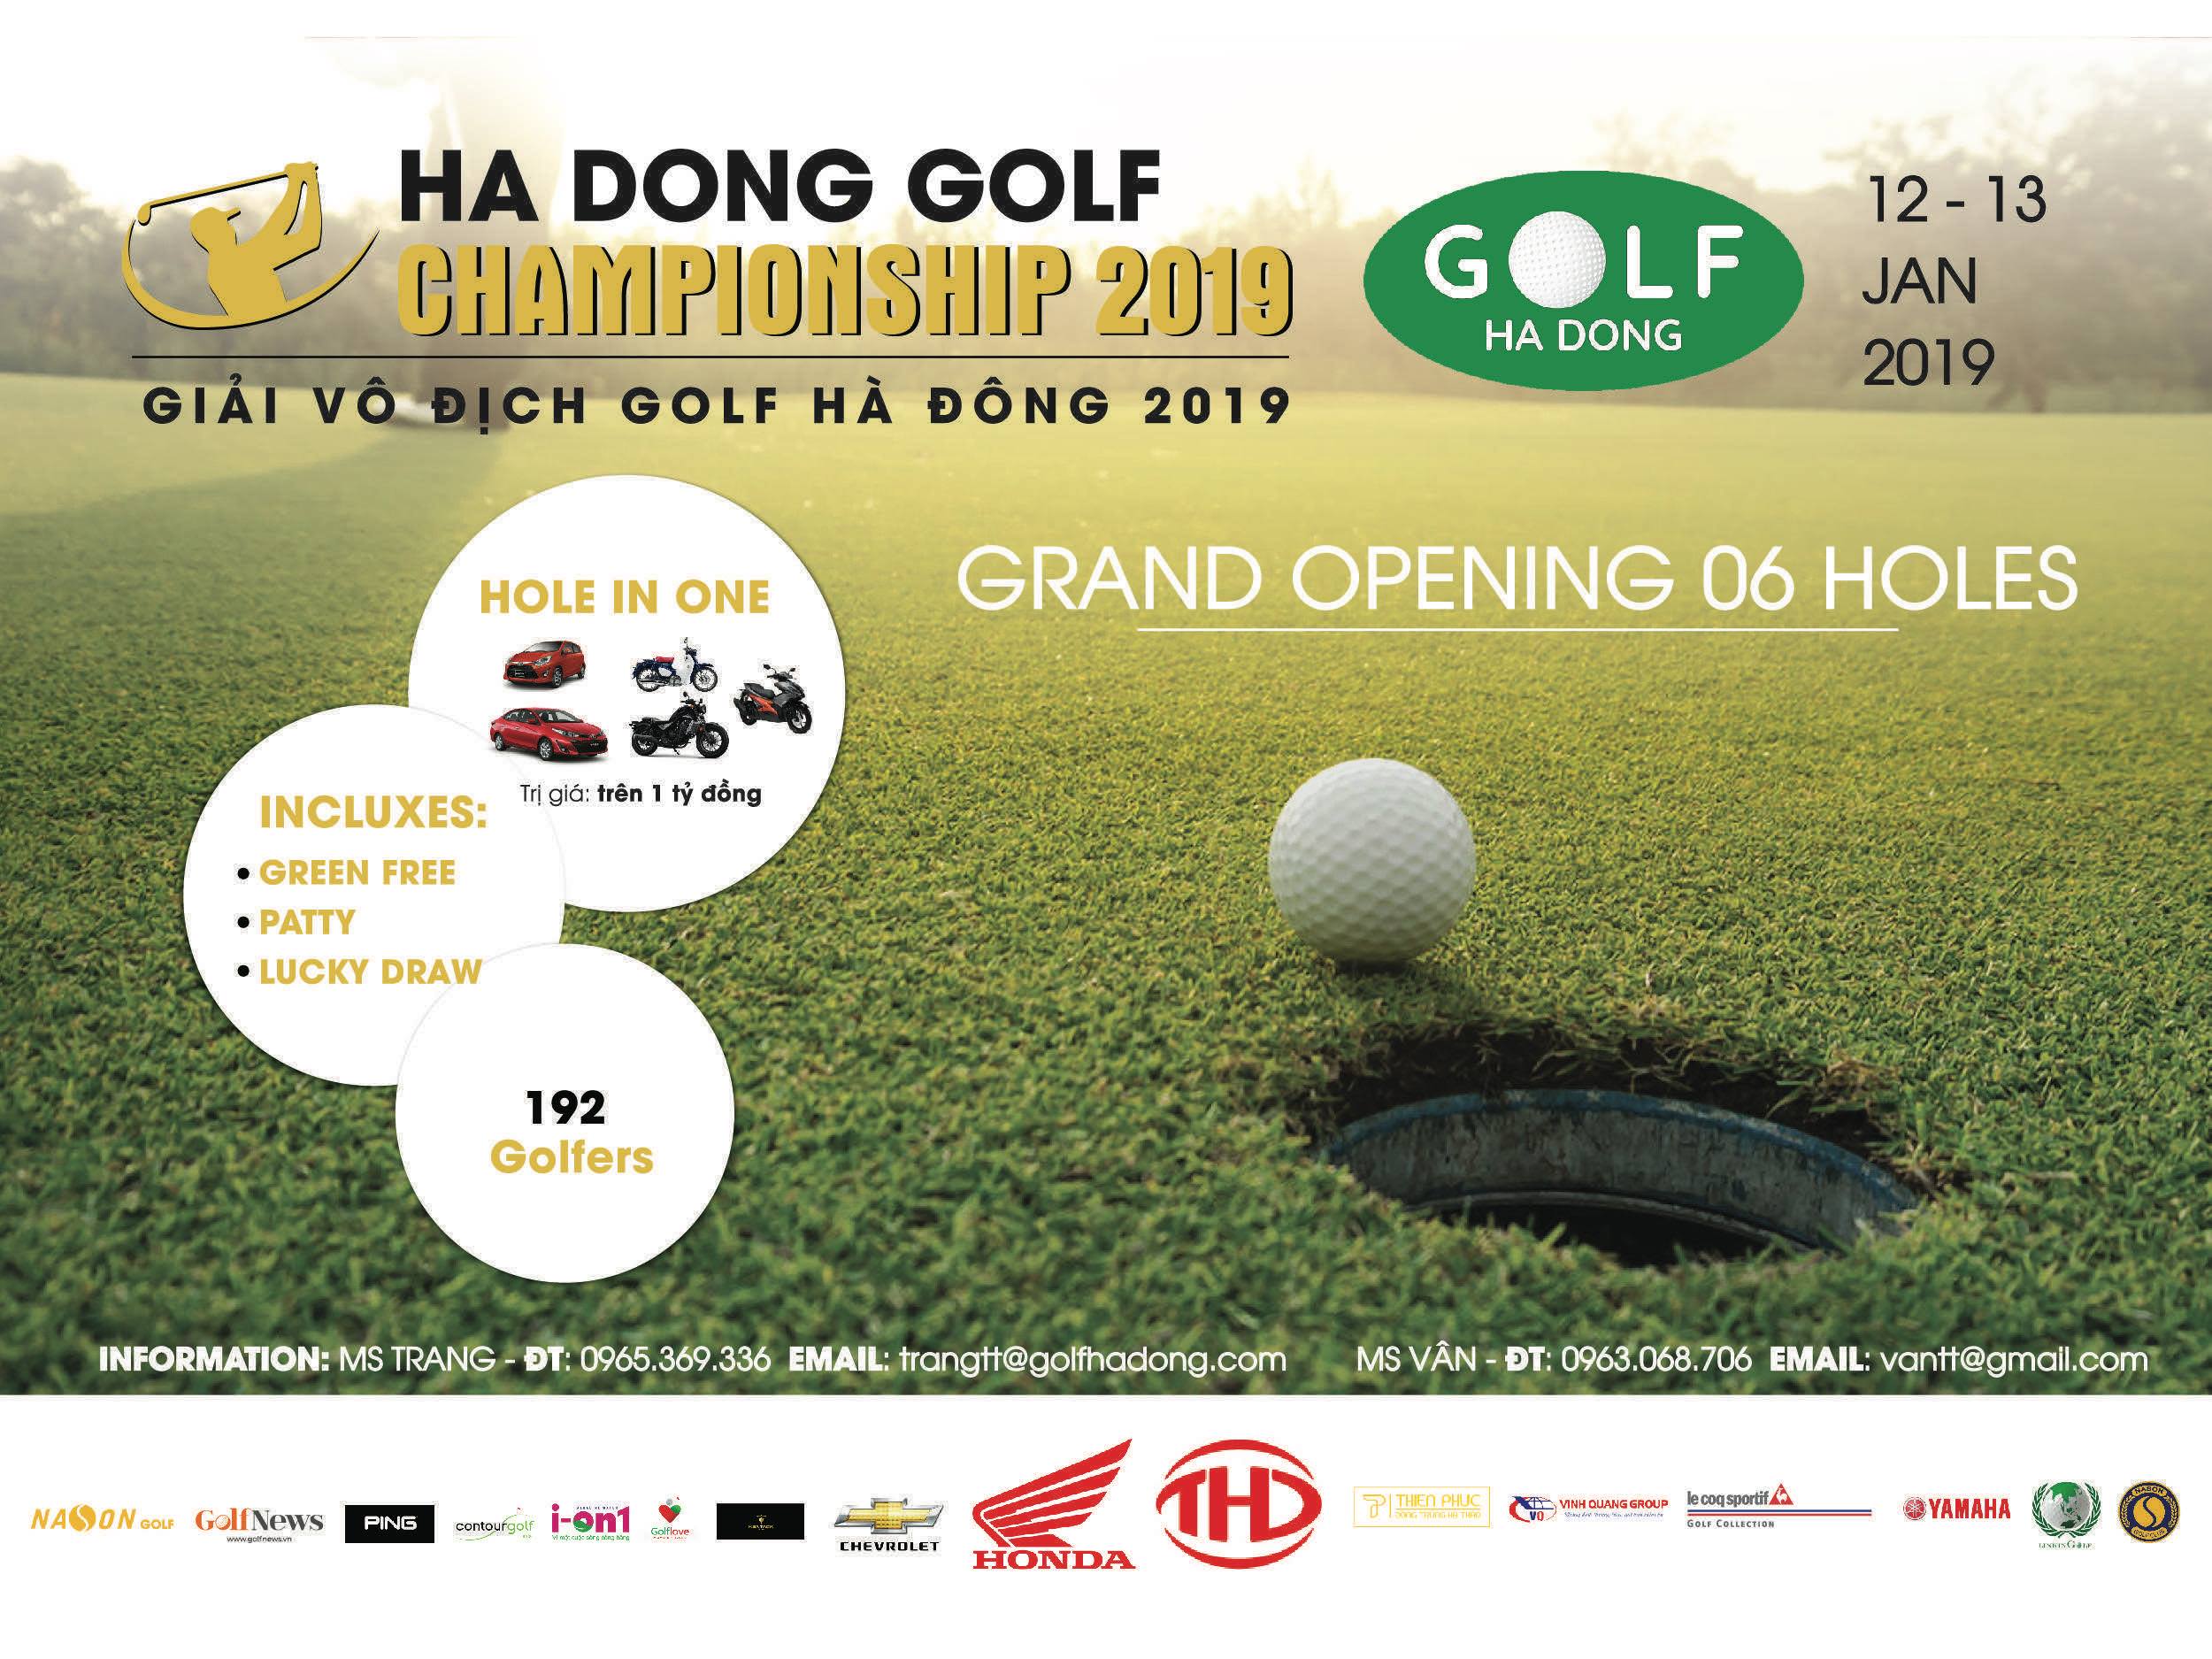 Gần 200 golfers sẽ tham dự 'Giải vô địch Golf Hà Đông 2019'